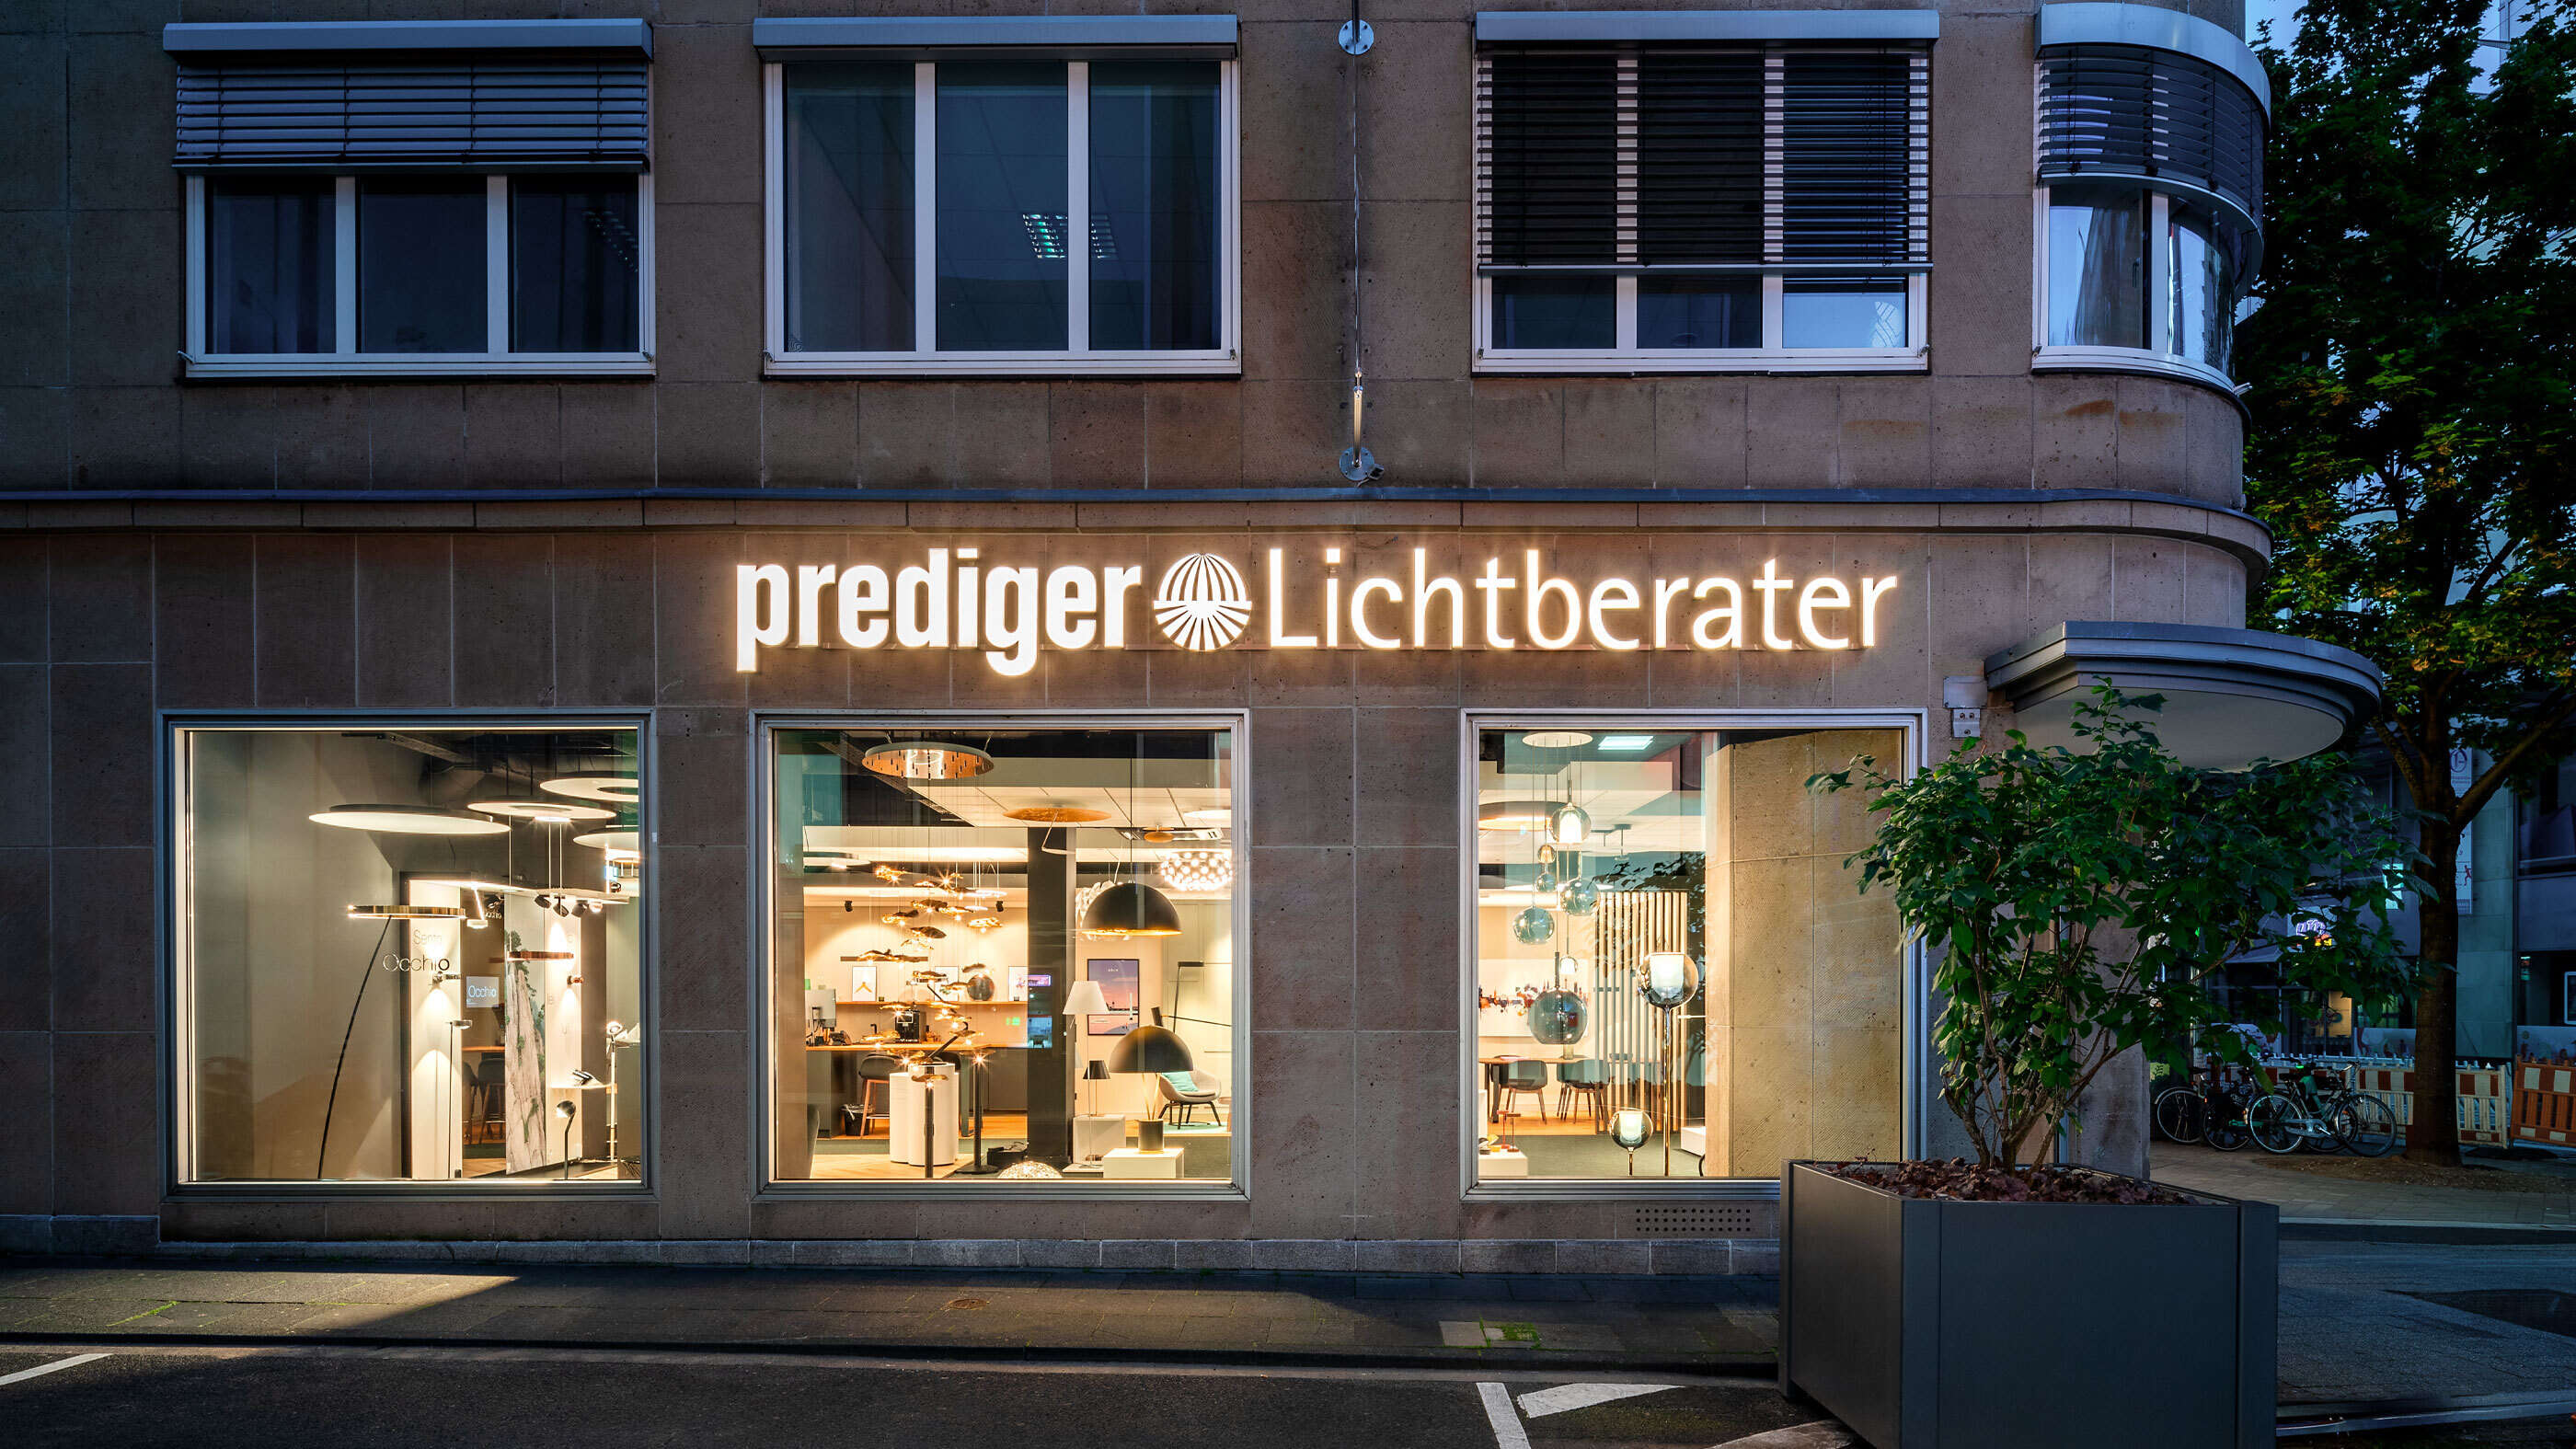 Die Fassade des Showrooms Köln von Prediger Lichtberater am Abend, Blick von der Straße Große Sandkaul. (Foto: Jonathan Palanco)